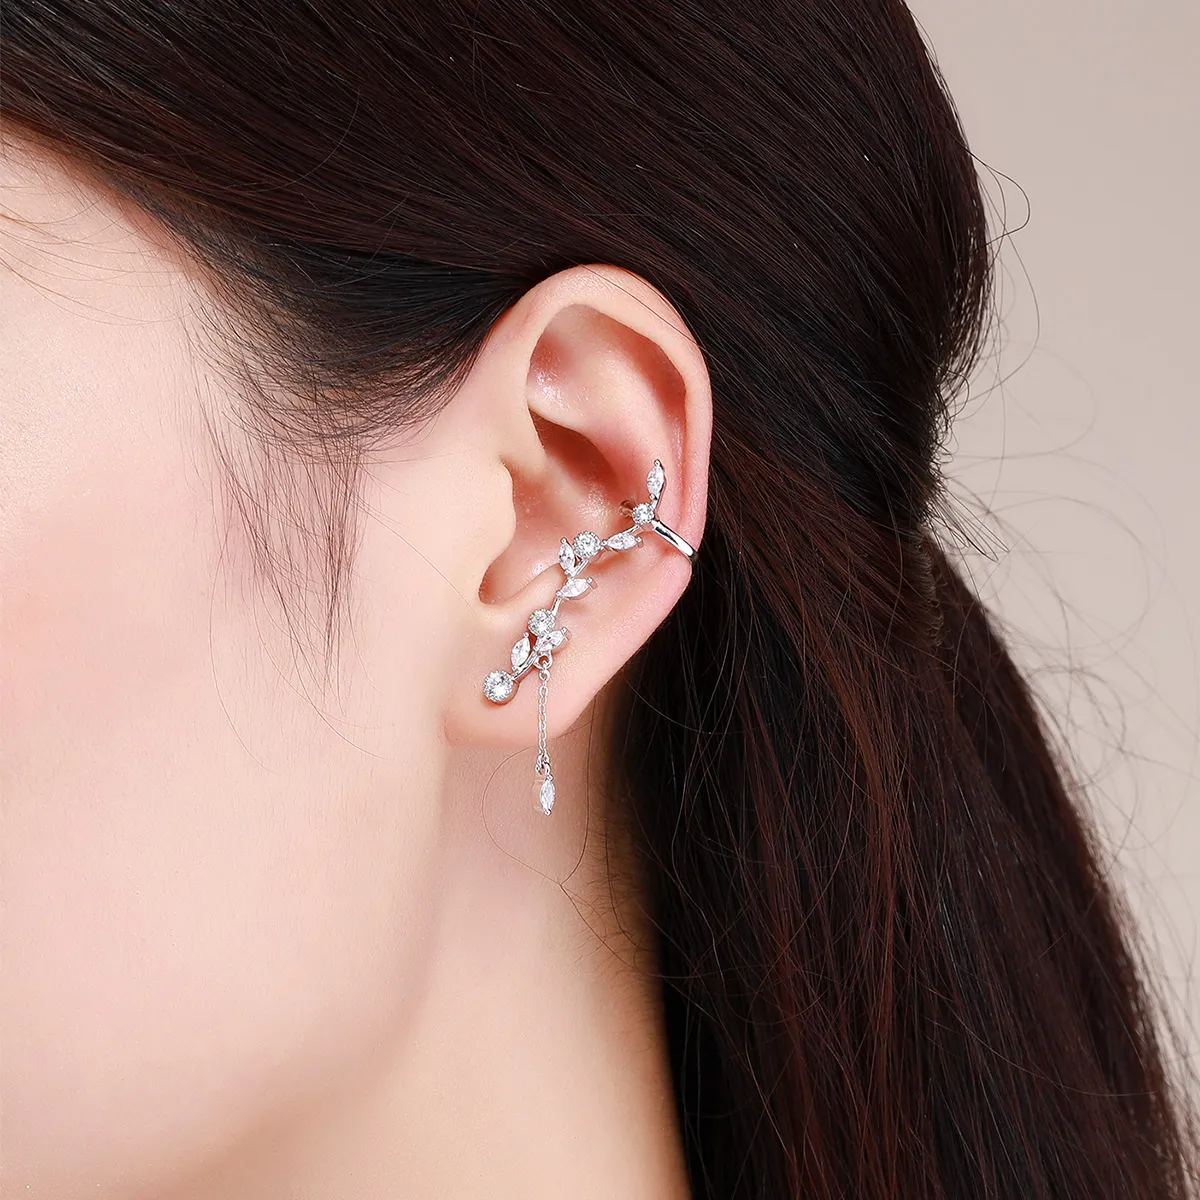 Pandora Style Silver Flower Branch Stud Earrings - SCE429